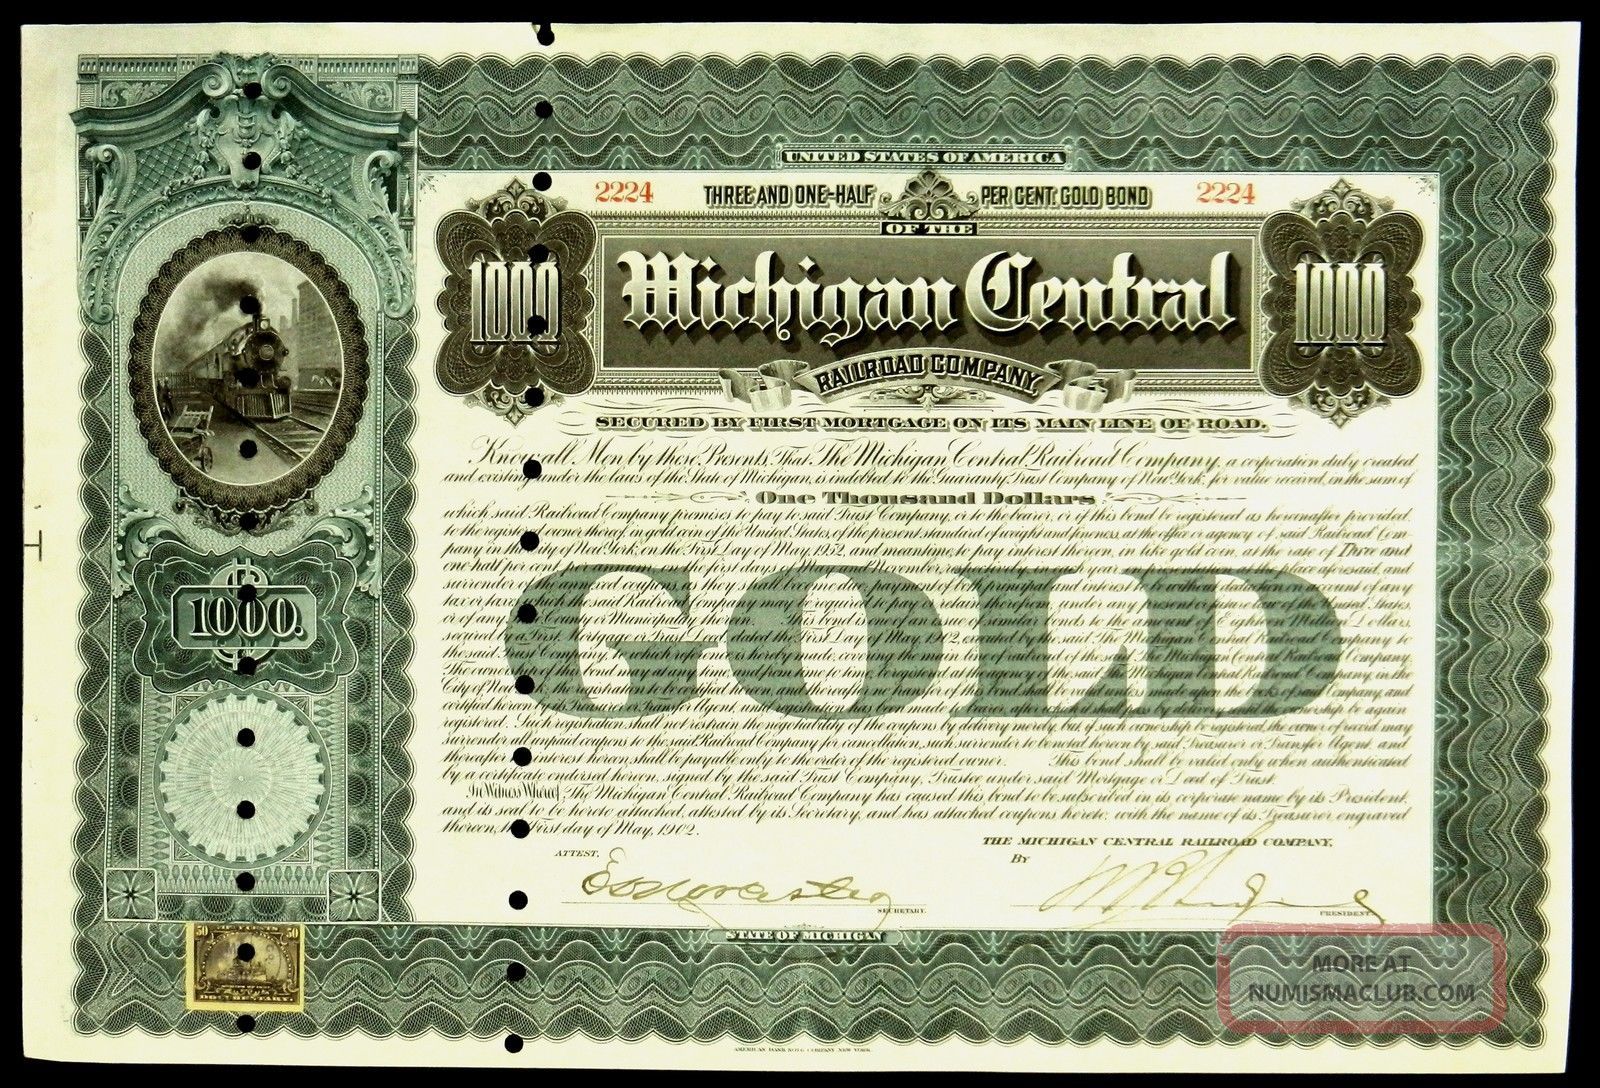 Michigan Central Railroad Company Bond 